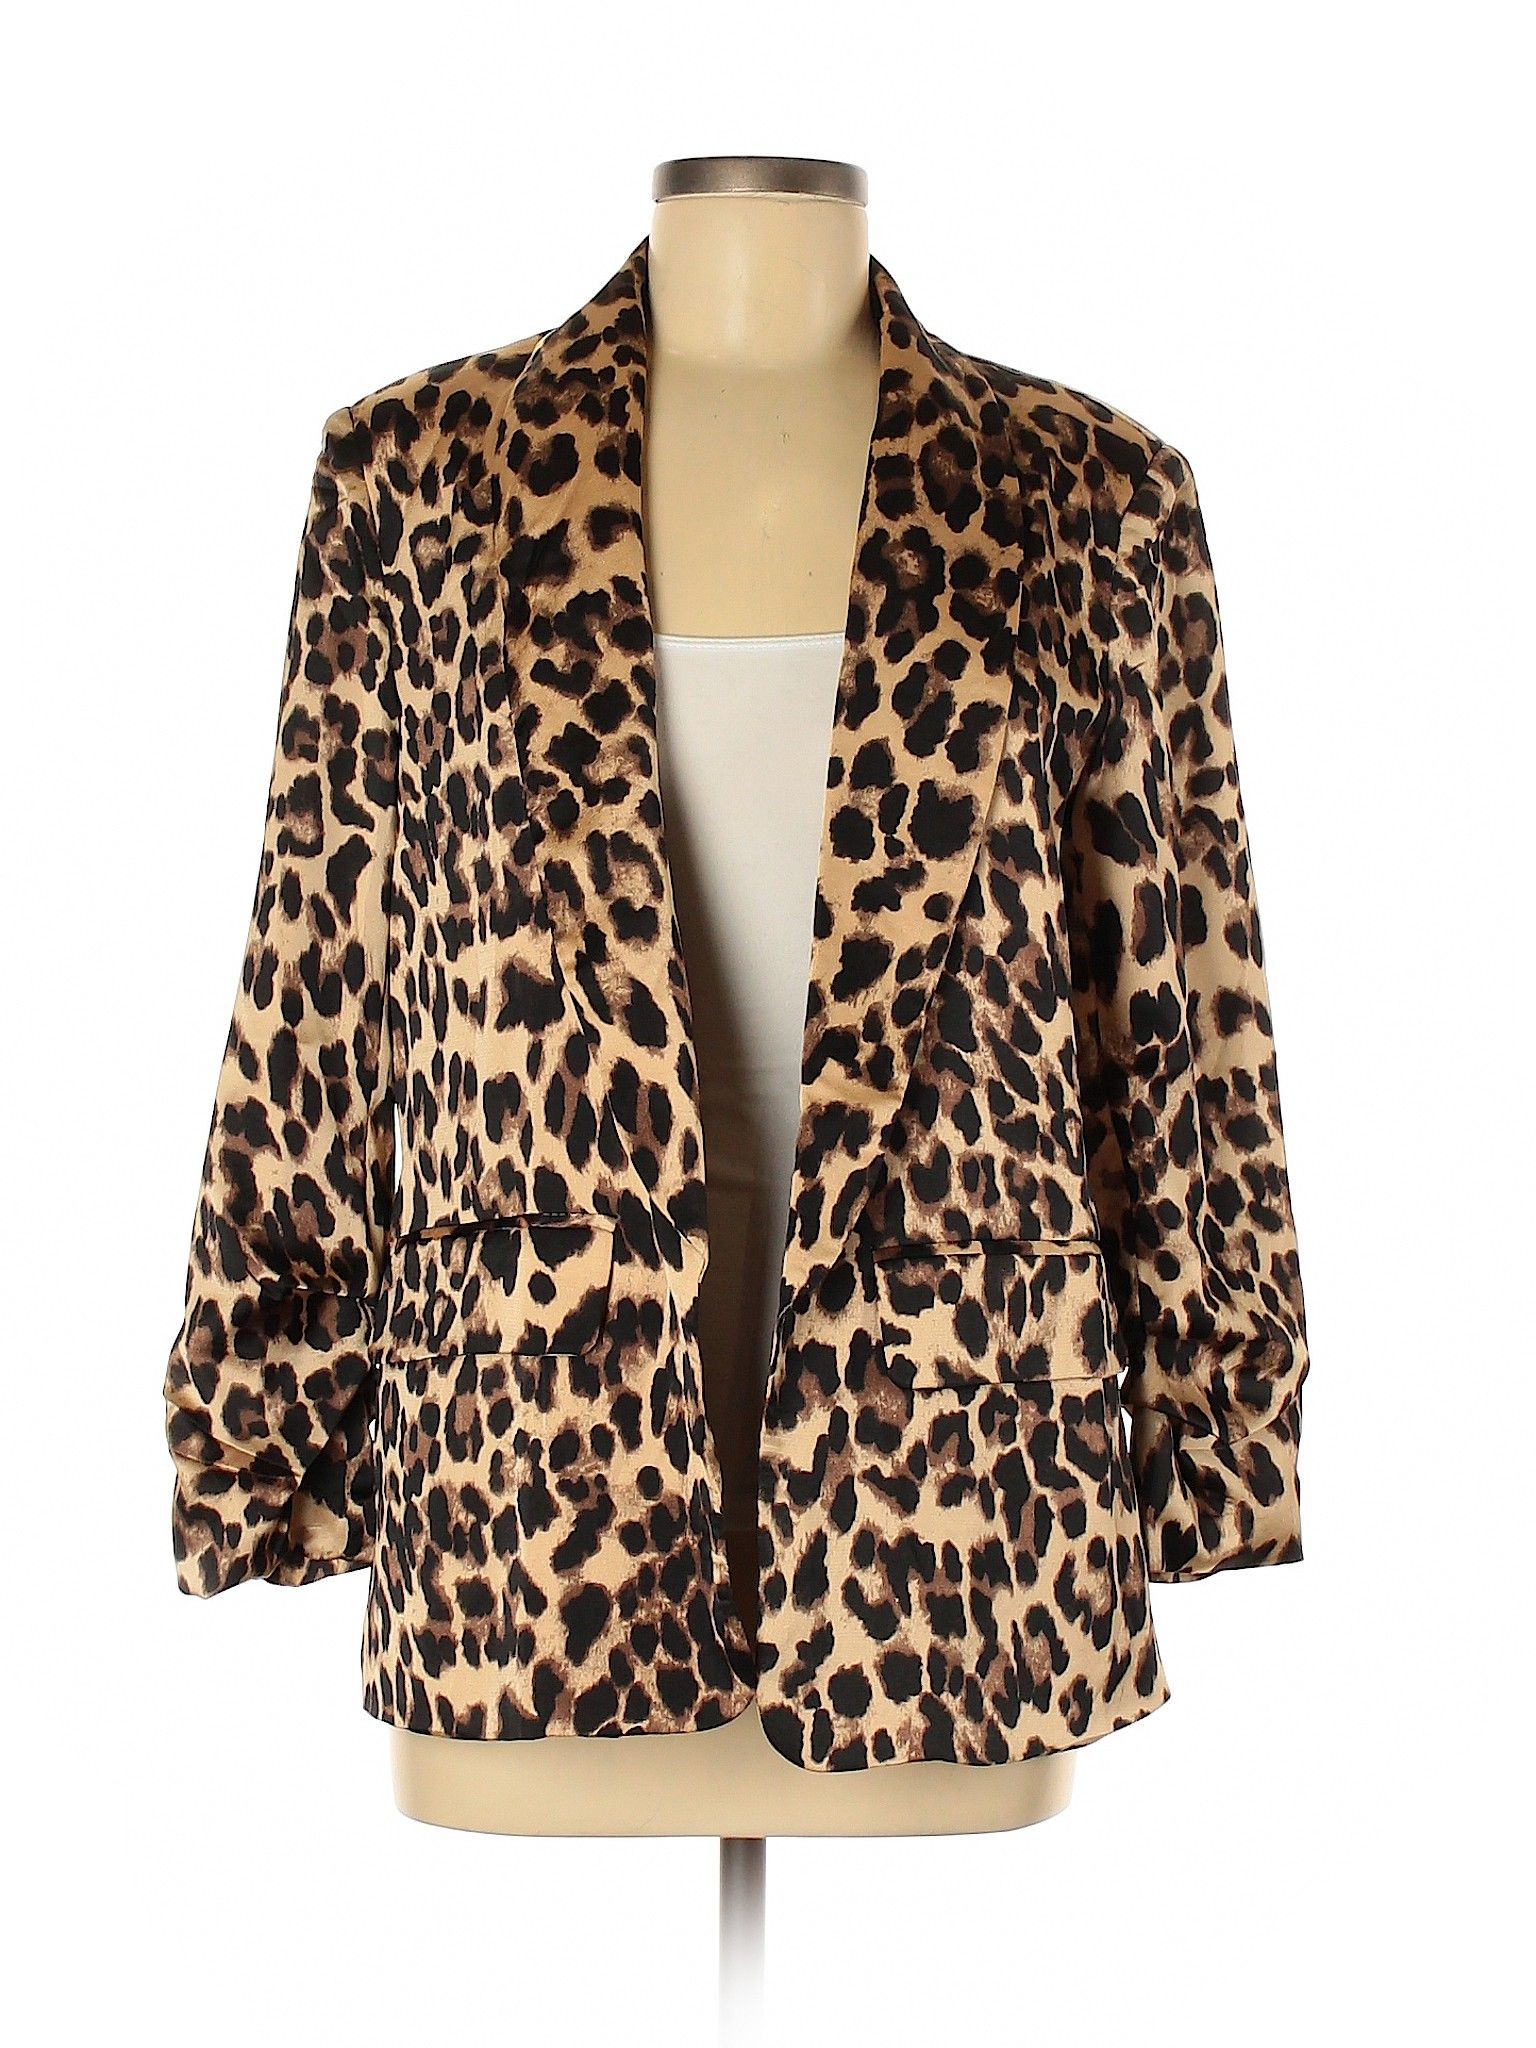 Shein Blazer Size 8: Brown Women's Jackets & Outerwear - 56552064 | thredUP